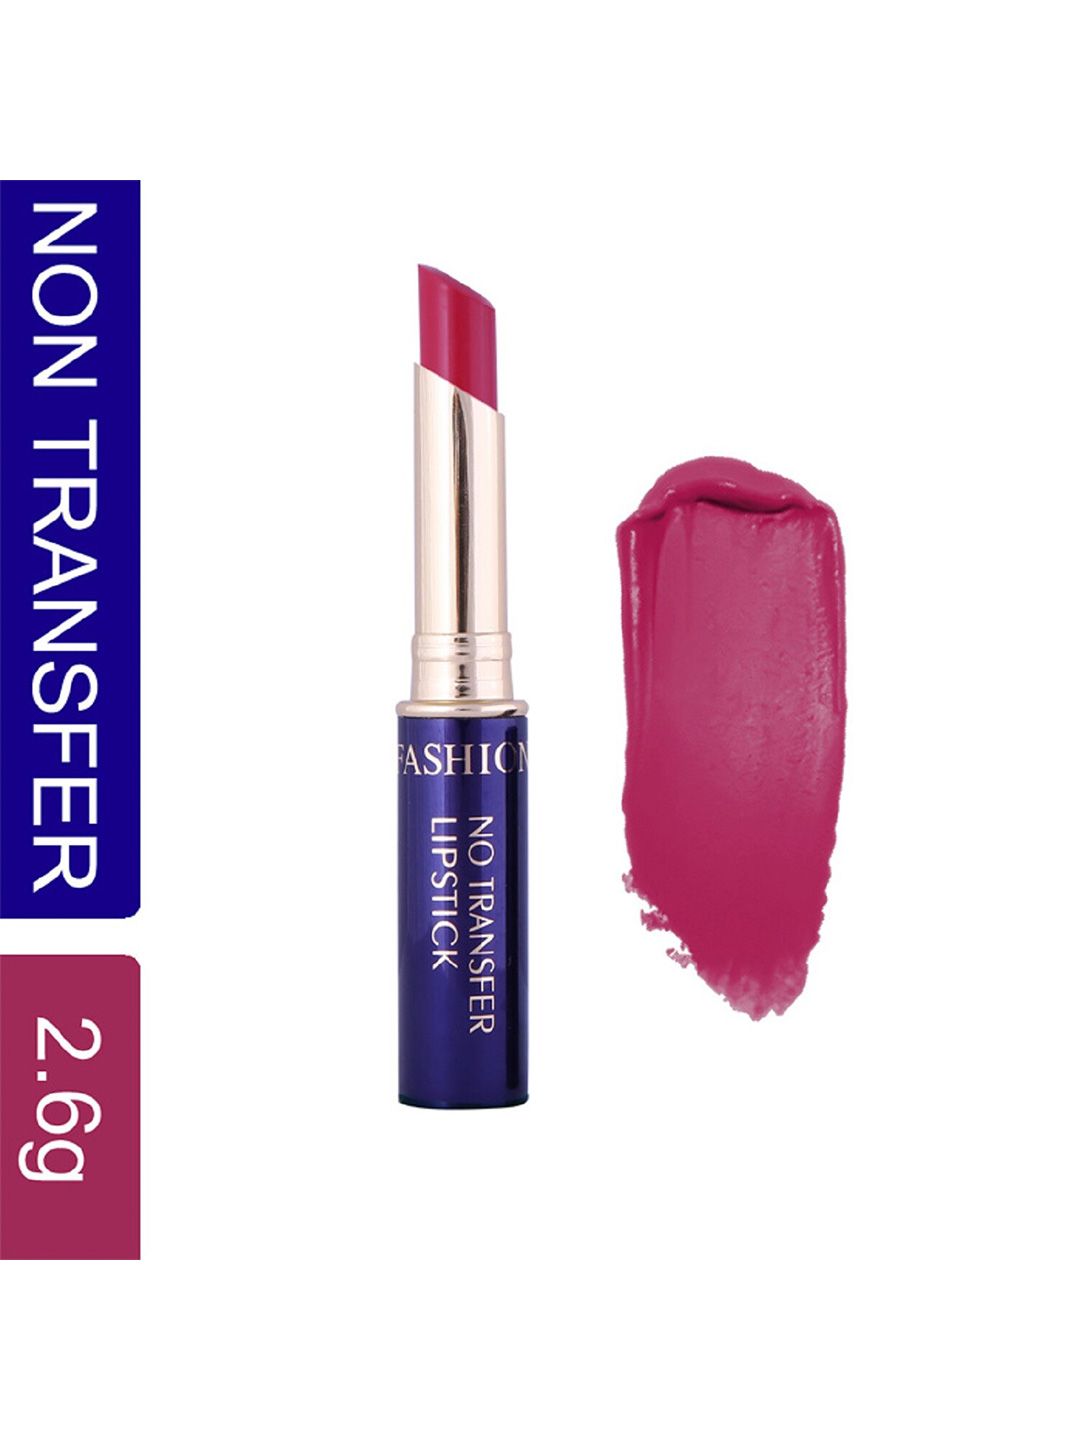 Fashion Colour Non-Transfer Waterproof Matte Lipstick - Lavender 41 Price in India